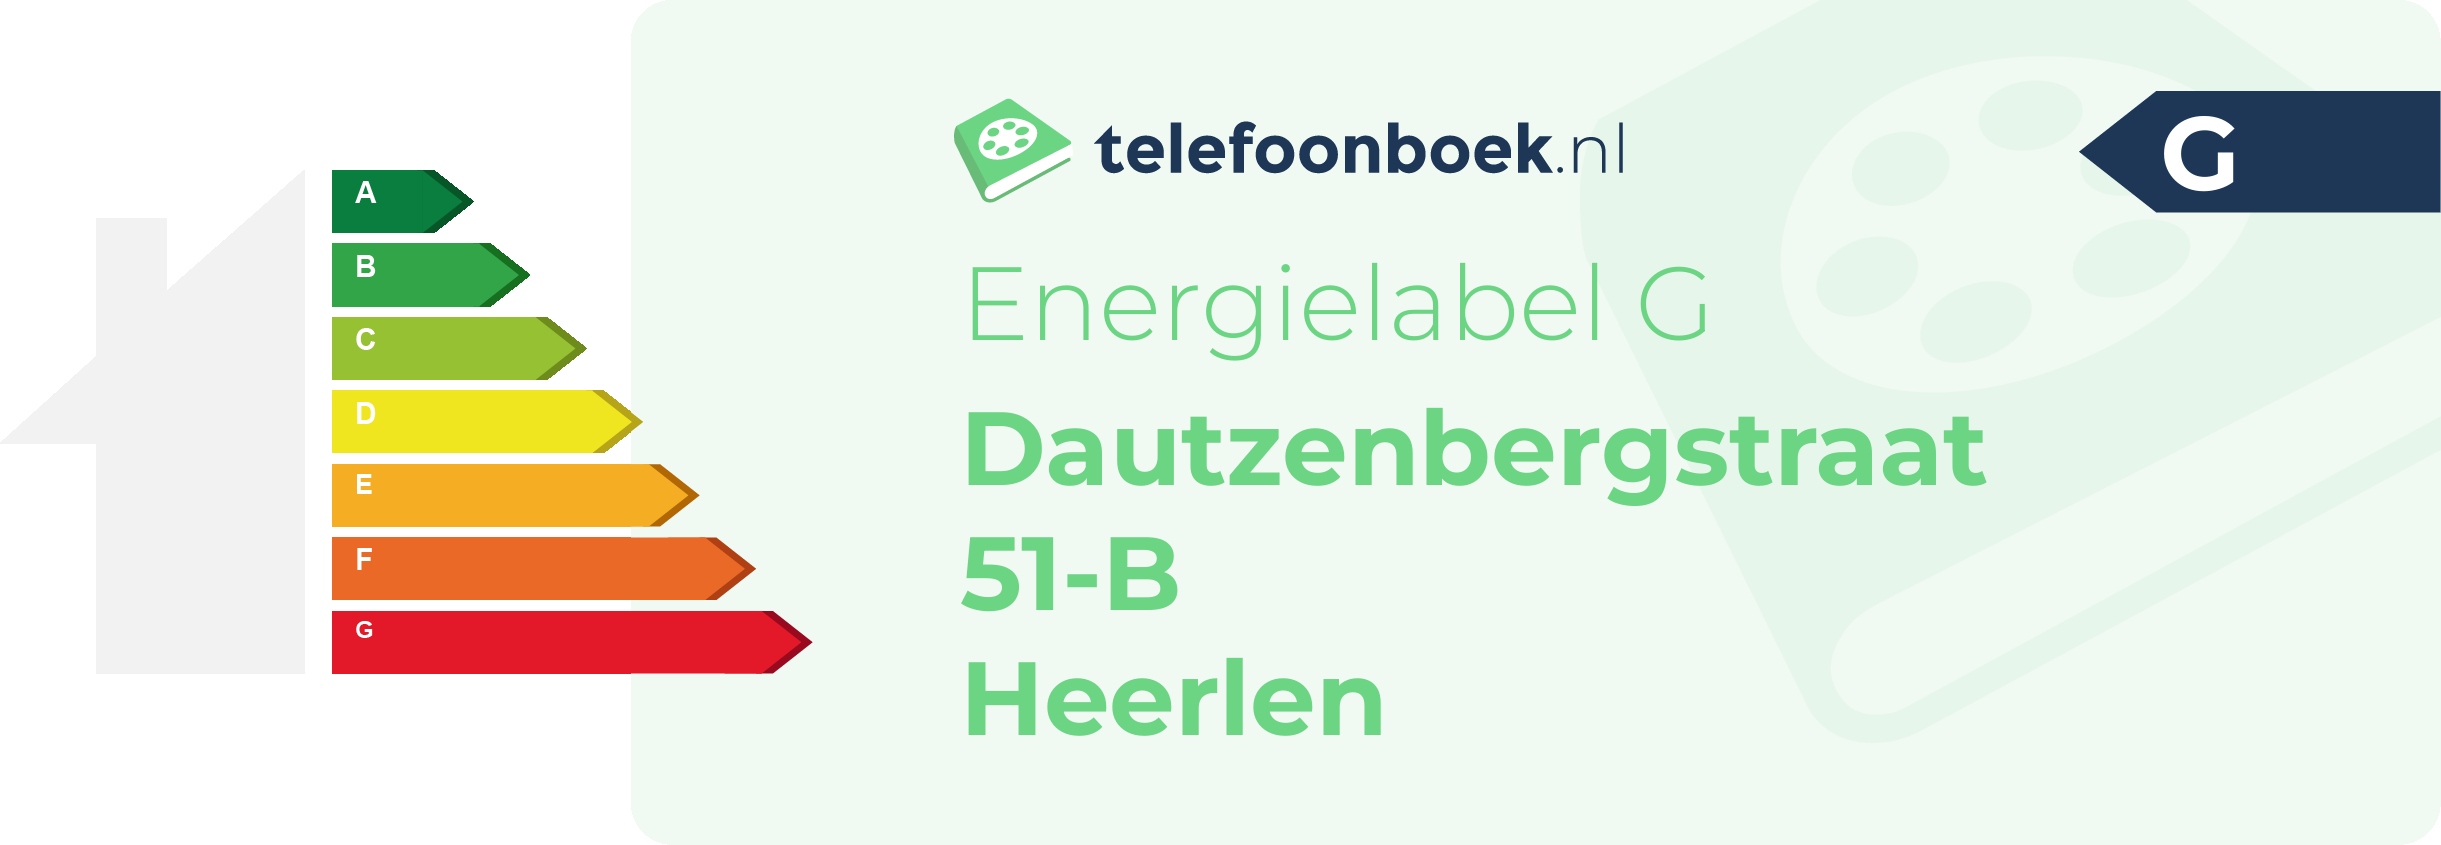 Energielabel Dautzenbergstraat 51-B Heerlen